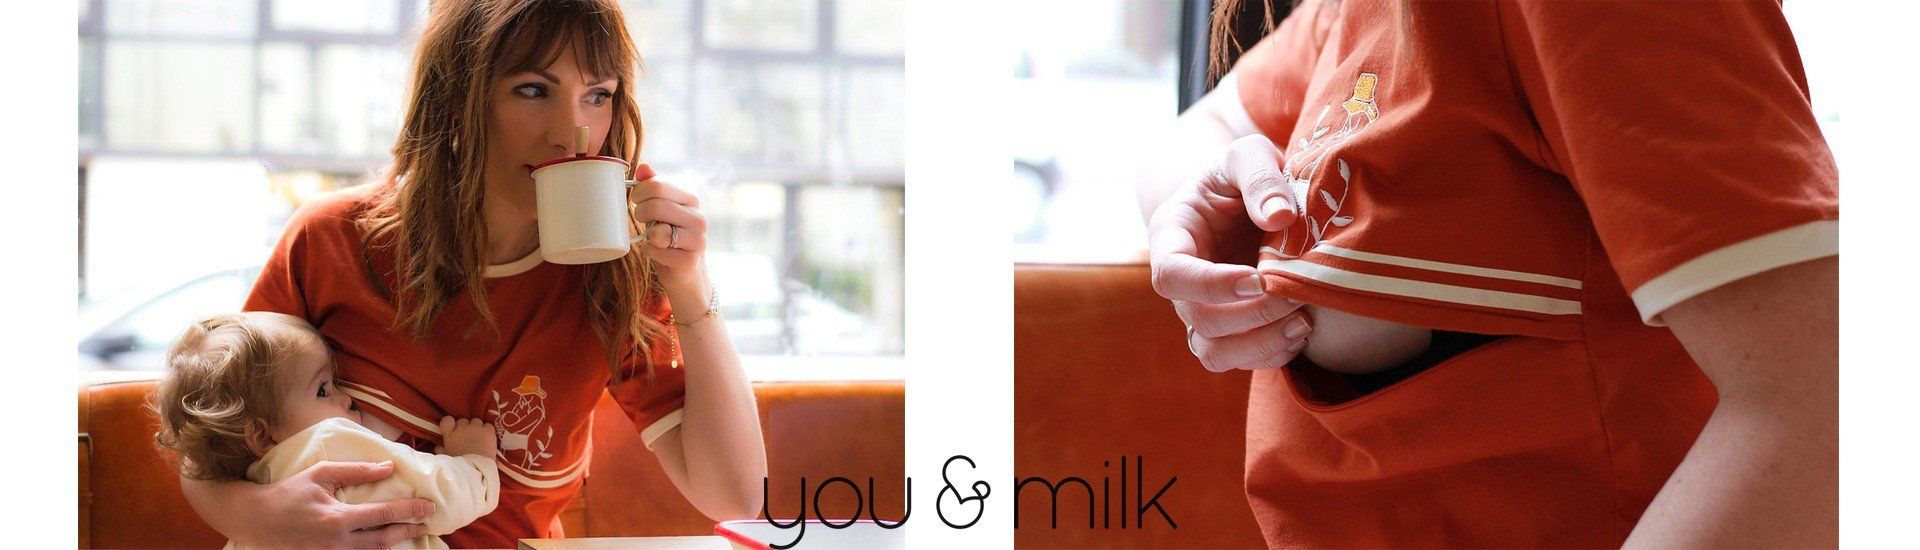 Nouveauté You&Milk 